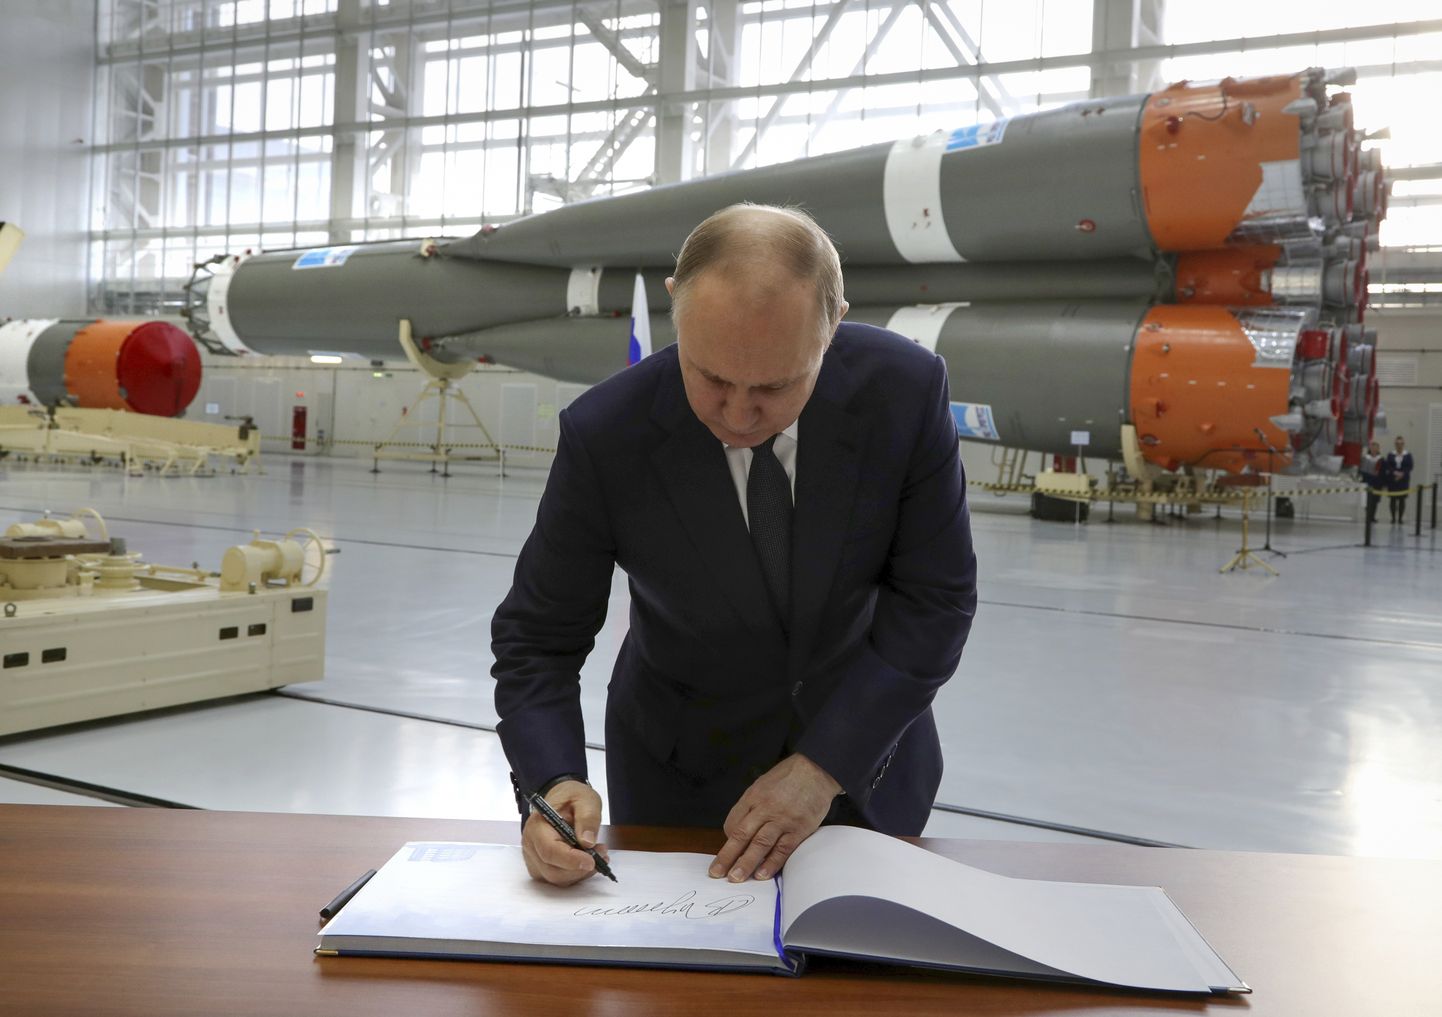 Venemaa president Vladimir Putin kirjutamas sõnumit külalisteraamatusse Vostotšnõi kosmodroomis 12. aprillil 2022.